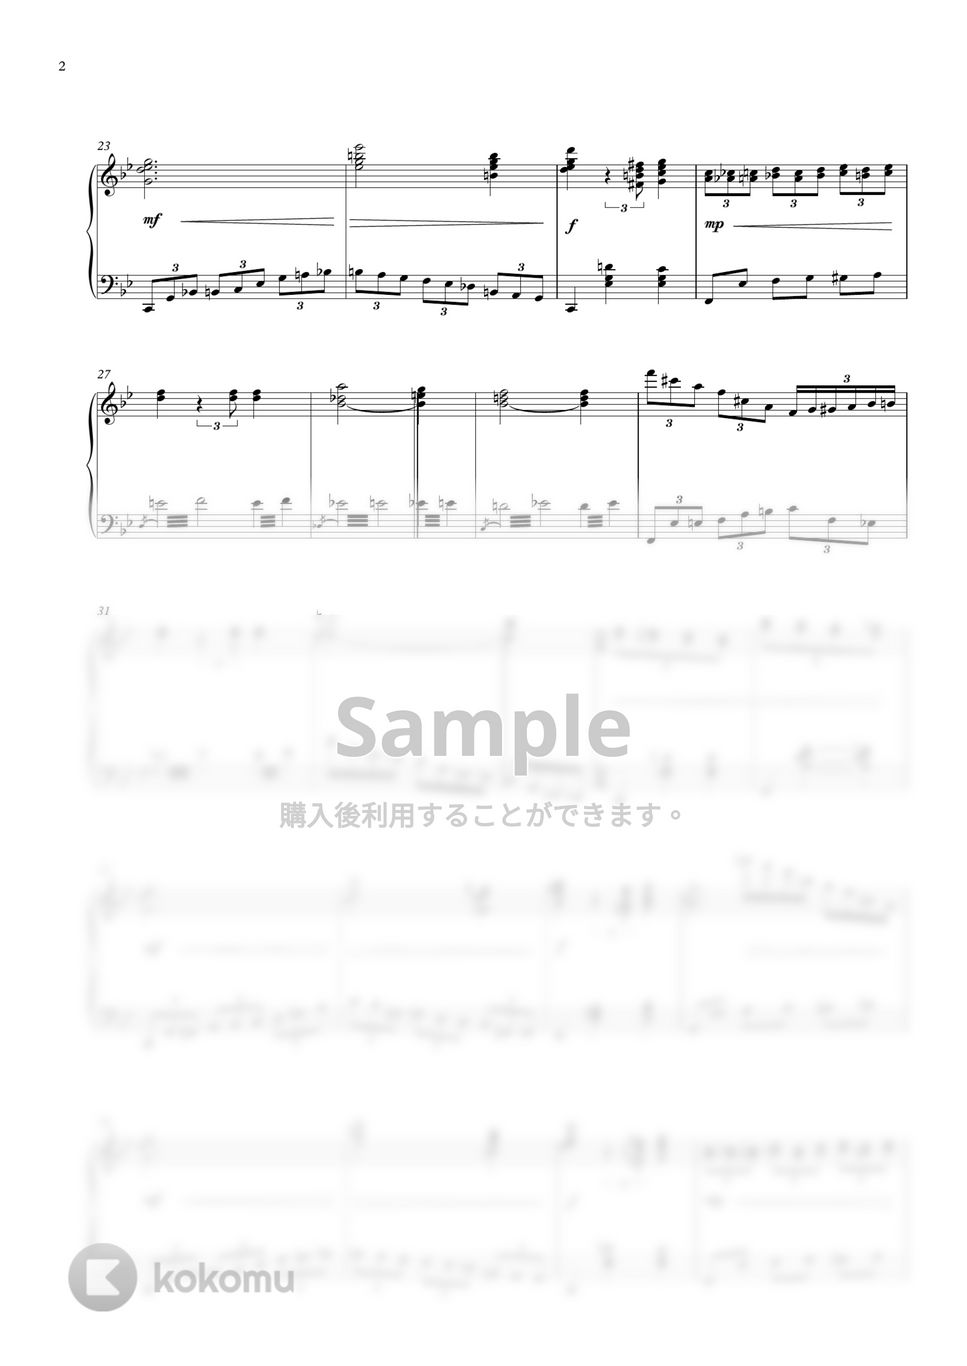 白雪姫 - いつか王子様が (Classic Piano Version) by GoGoPiano